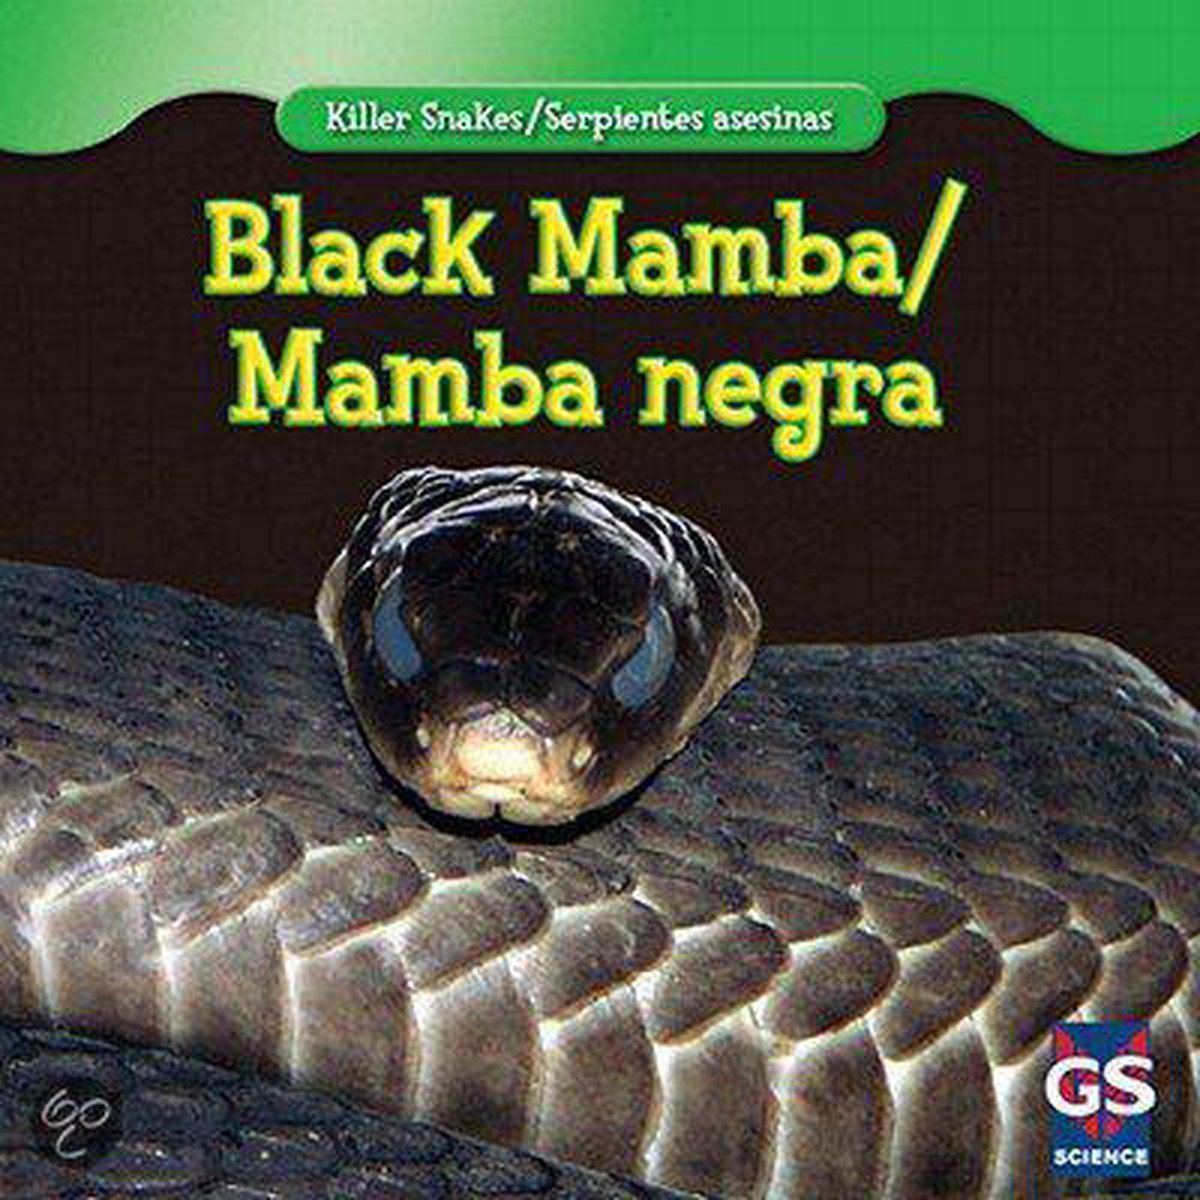 Mamba black negra mamba Buy Glo